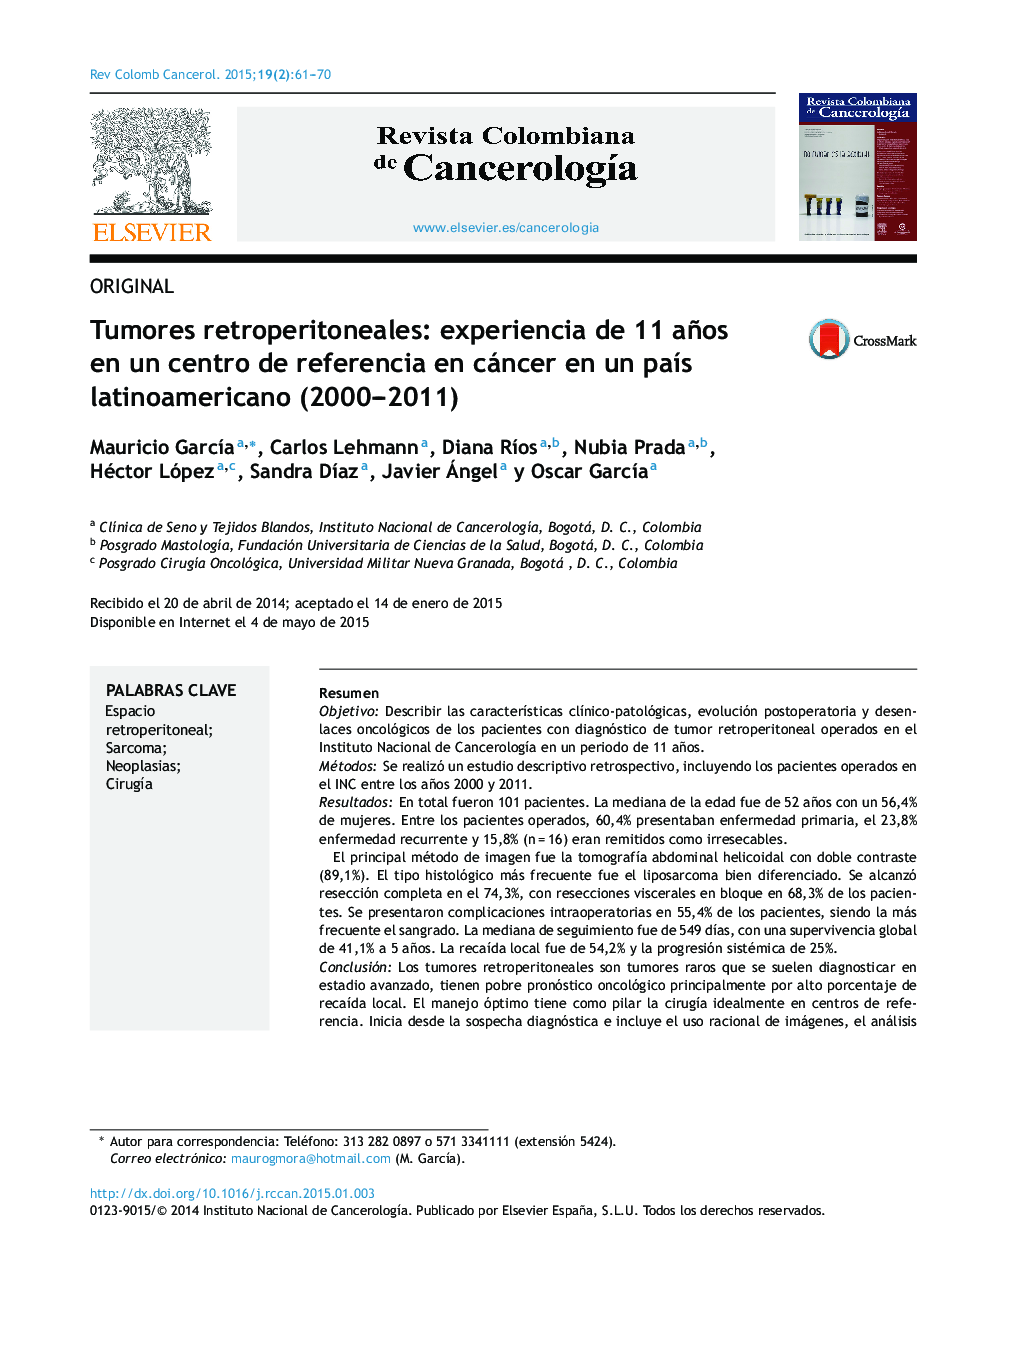 Tumores retroperitoneales: experiencia de 11 años en un centro de referencia en cáncer en un país latinoamericano (2000–2011)